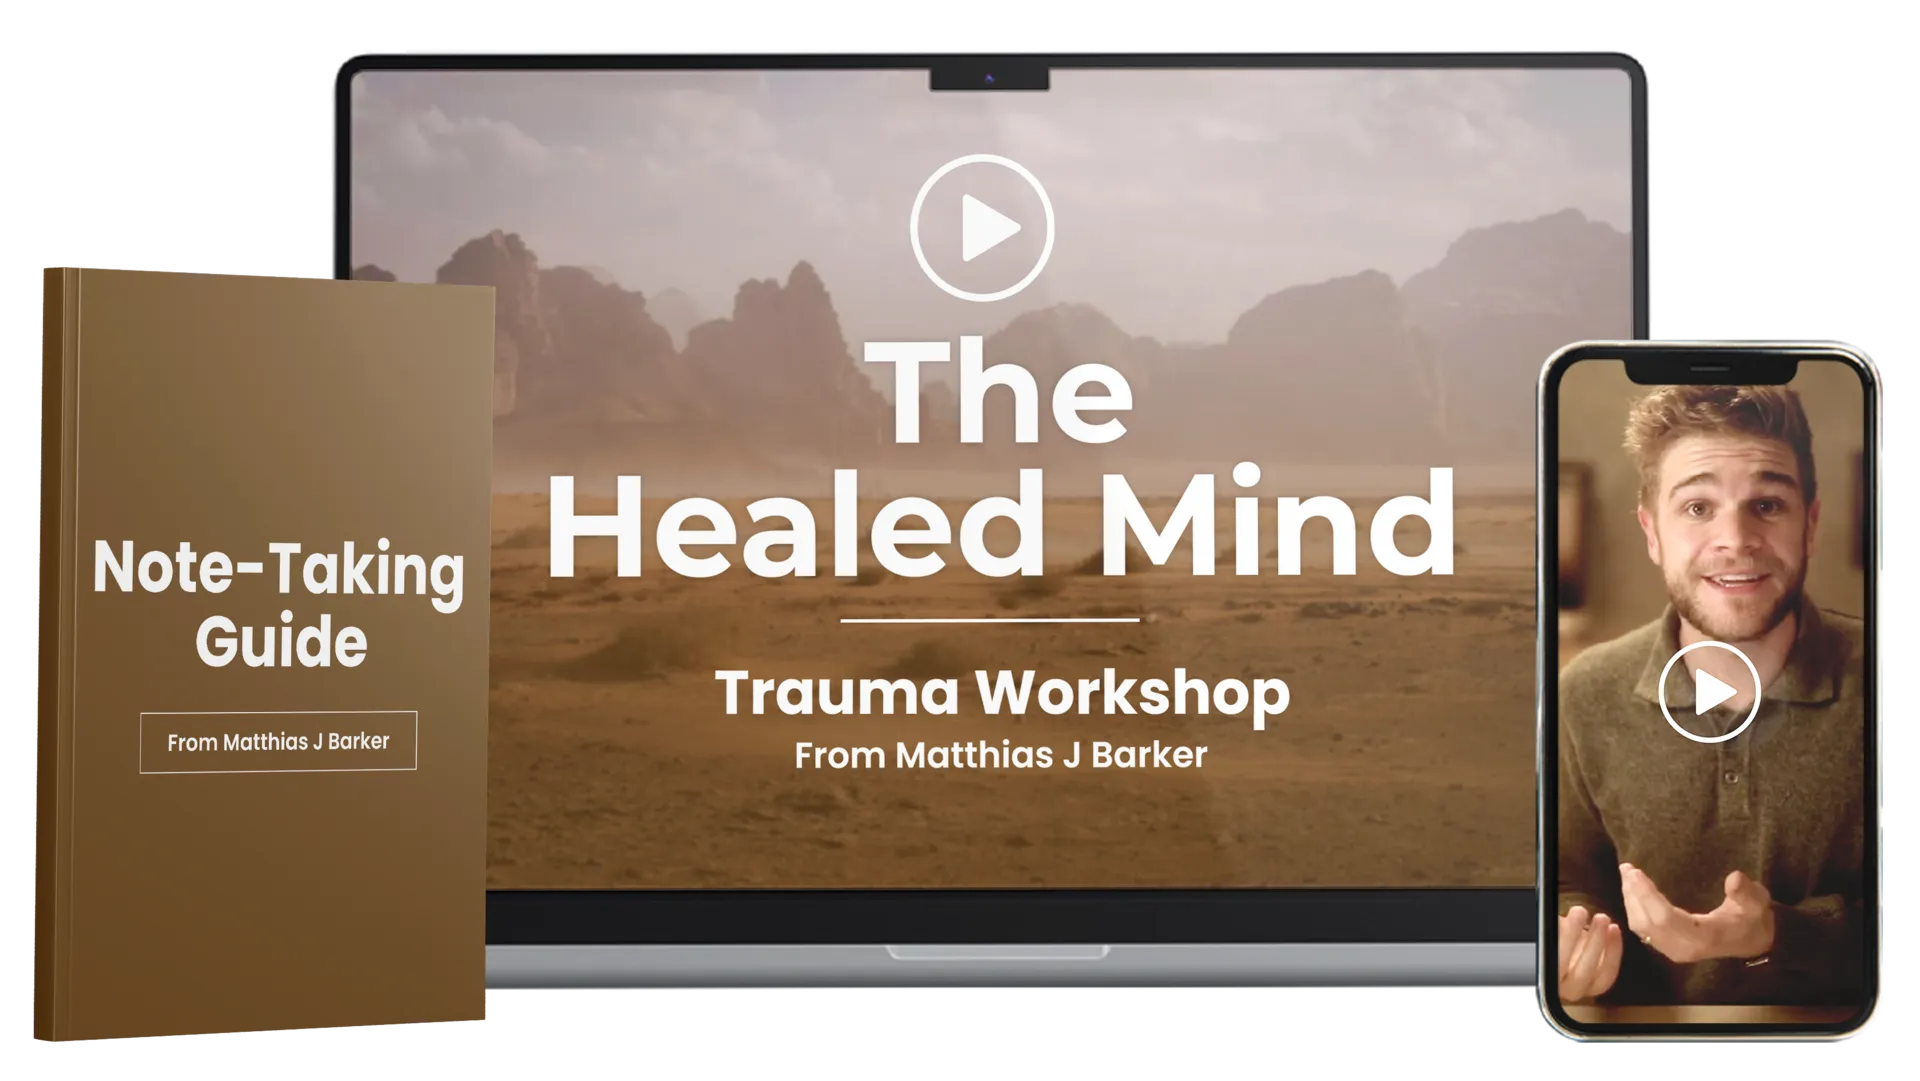 The Healed Mind Workshop